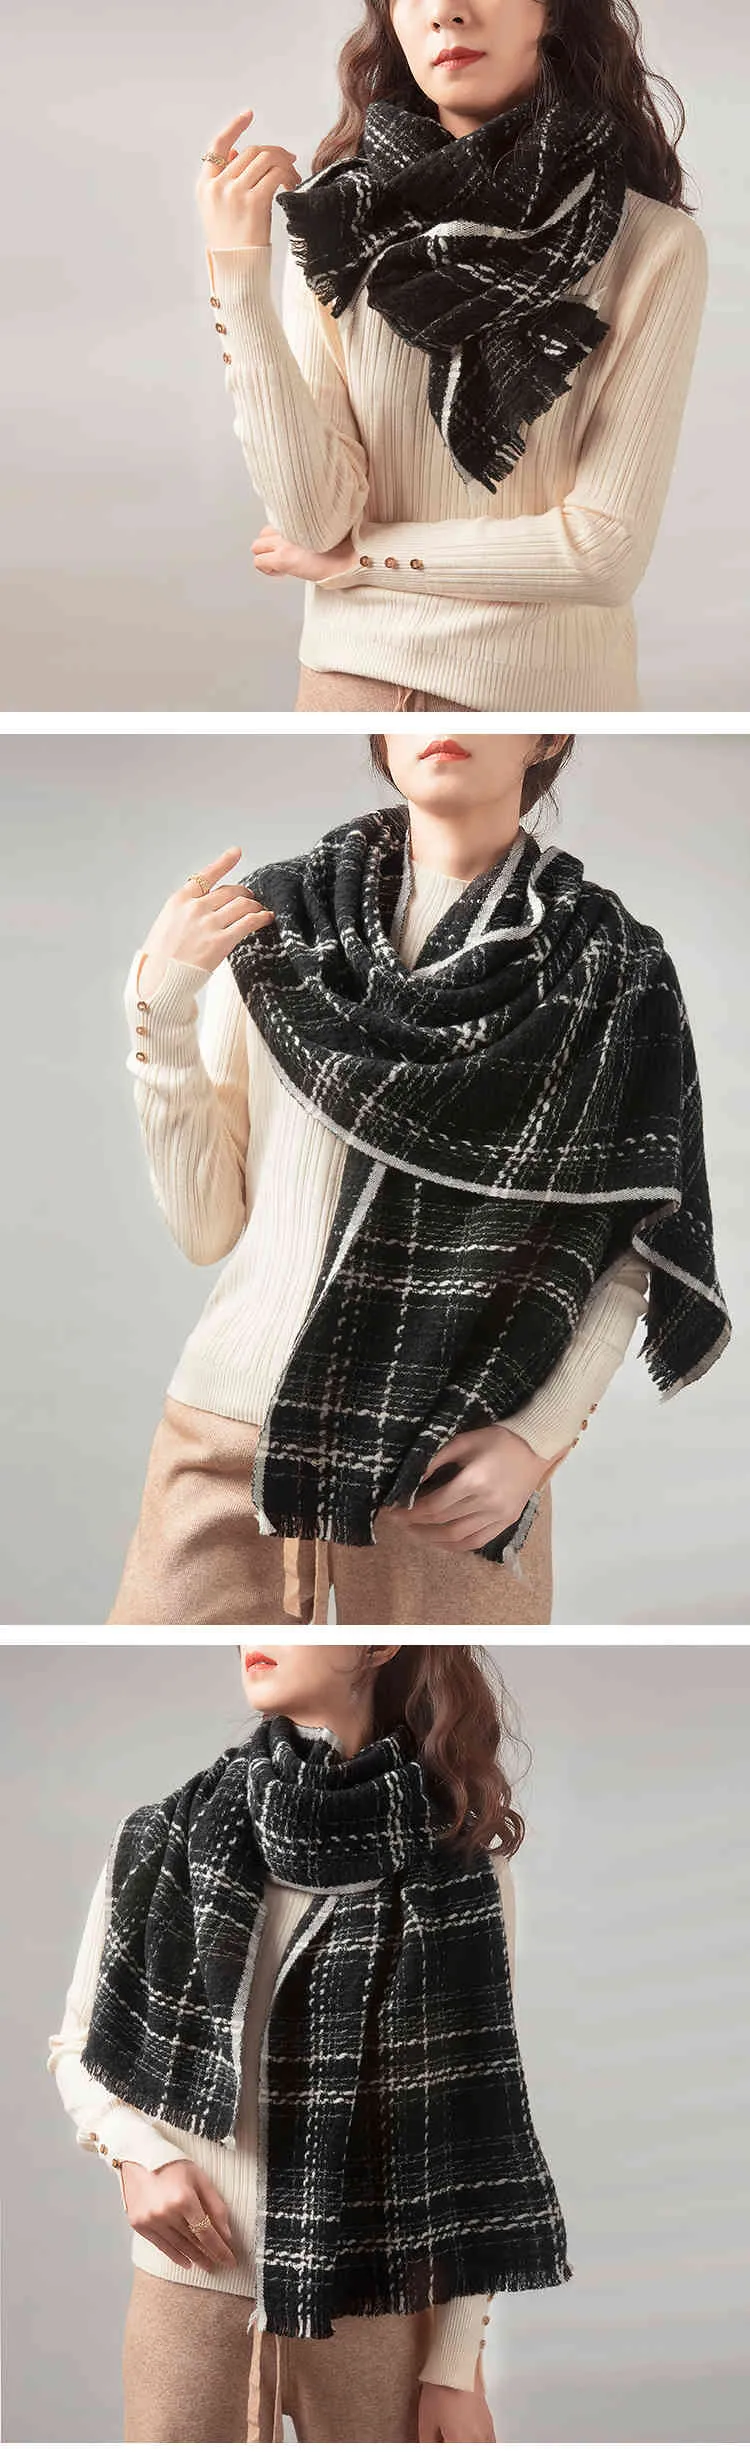 Bufanda de lana cálida tejida a rayas en blanco y negro versátil europea americana 2021 con engrosamiento de cuello estrecho para mujeres i